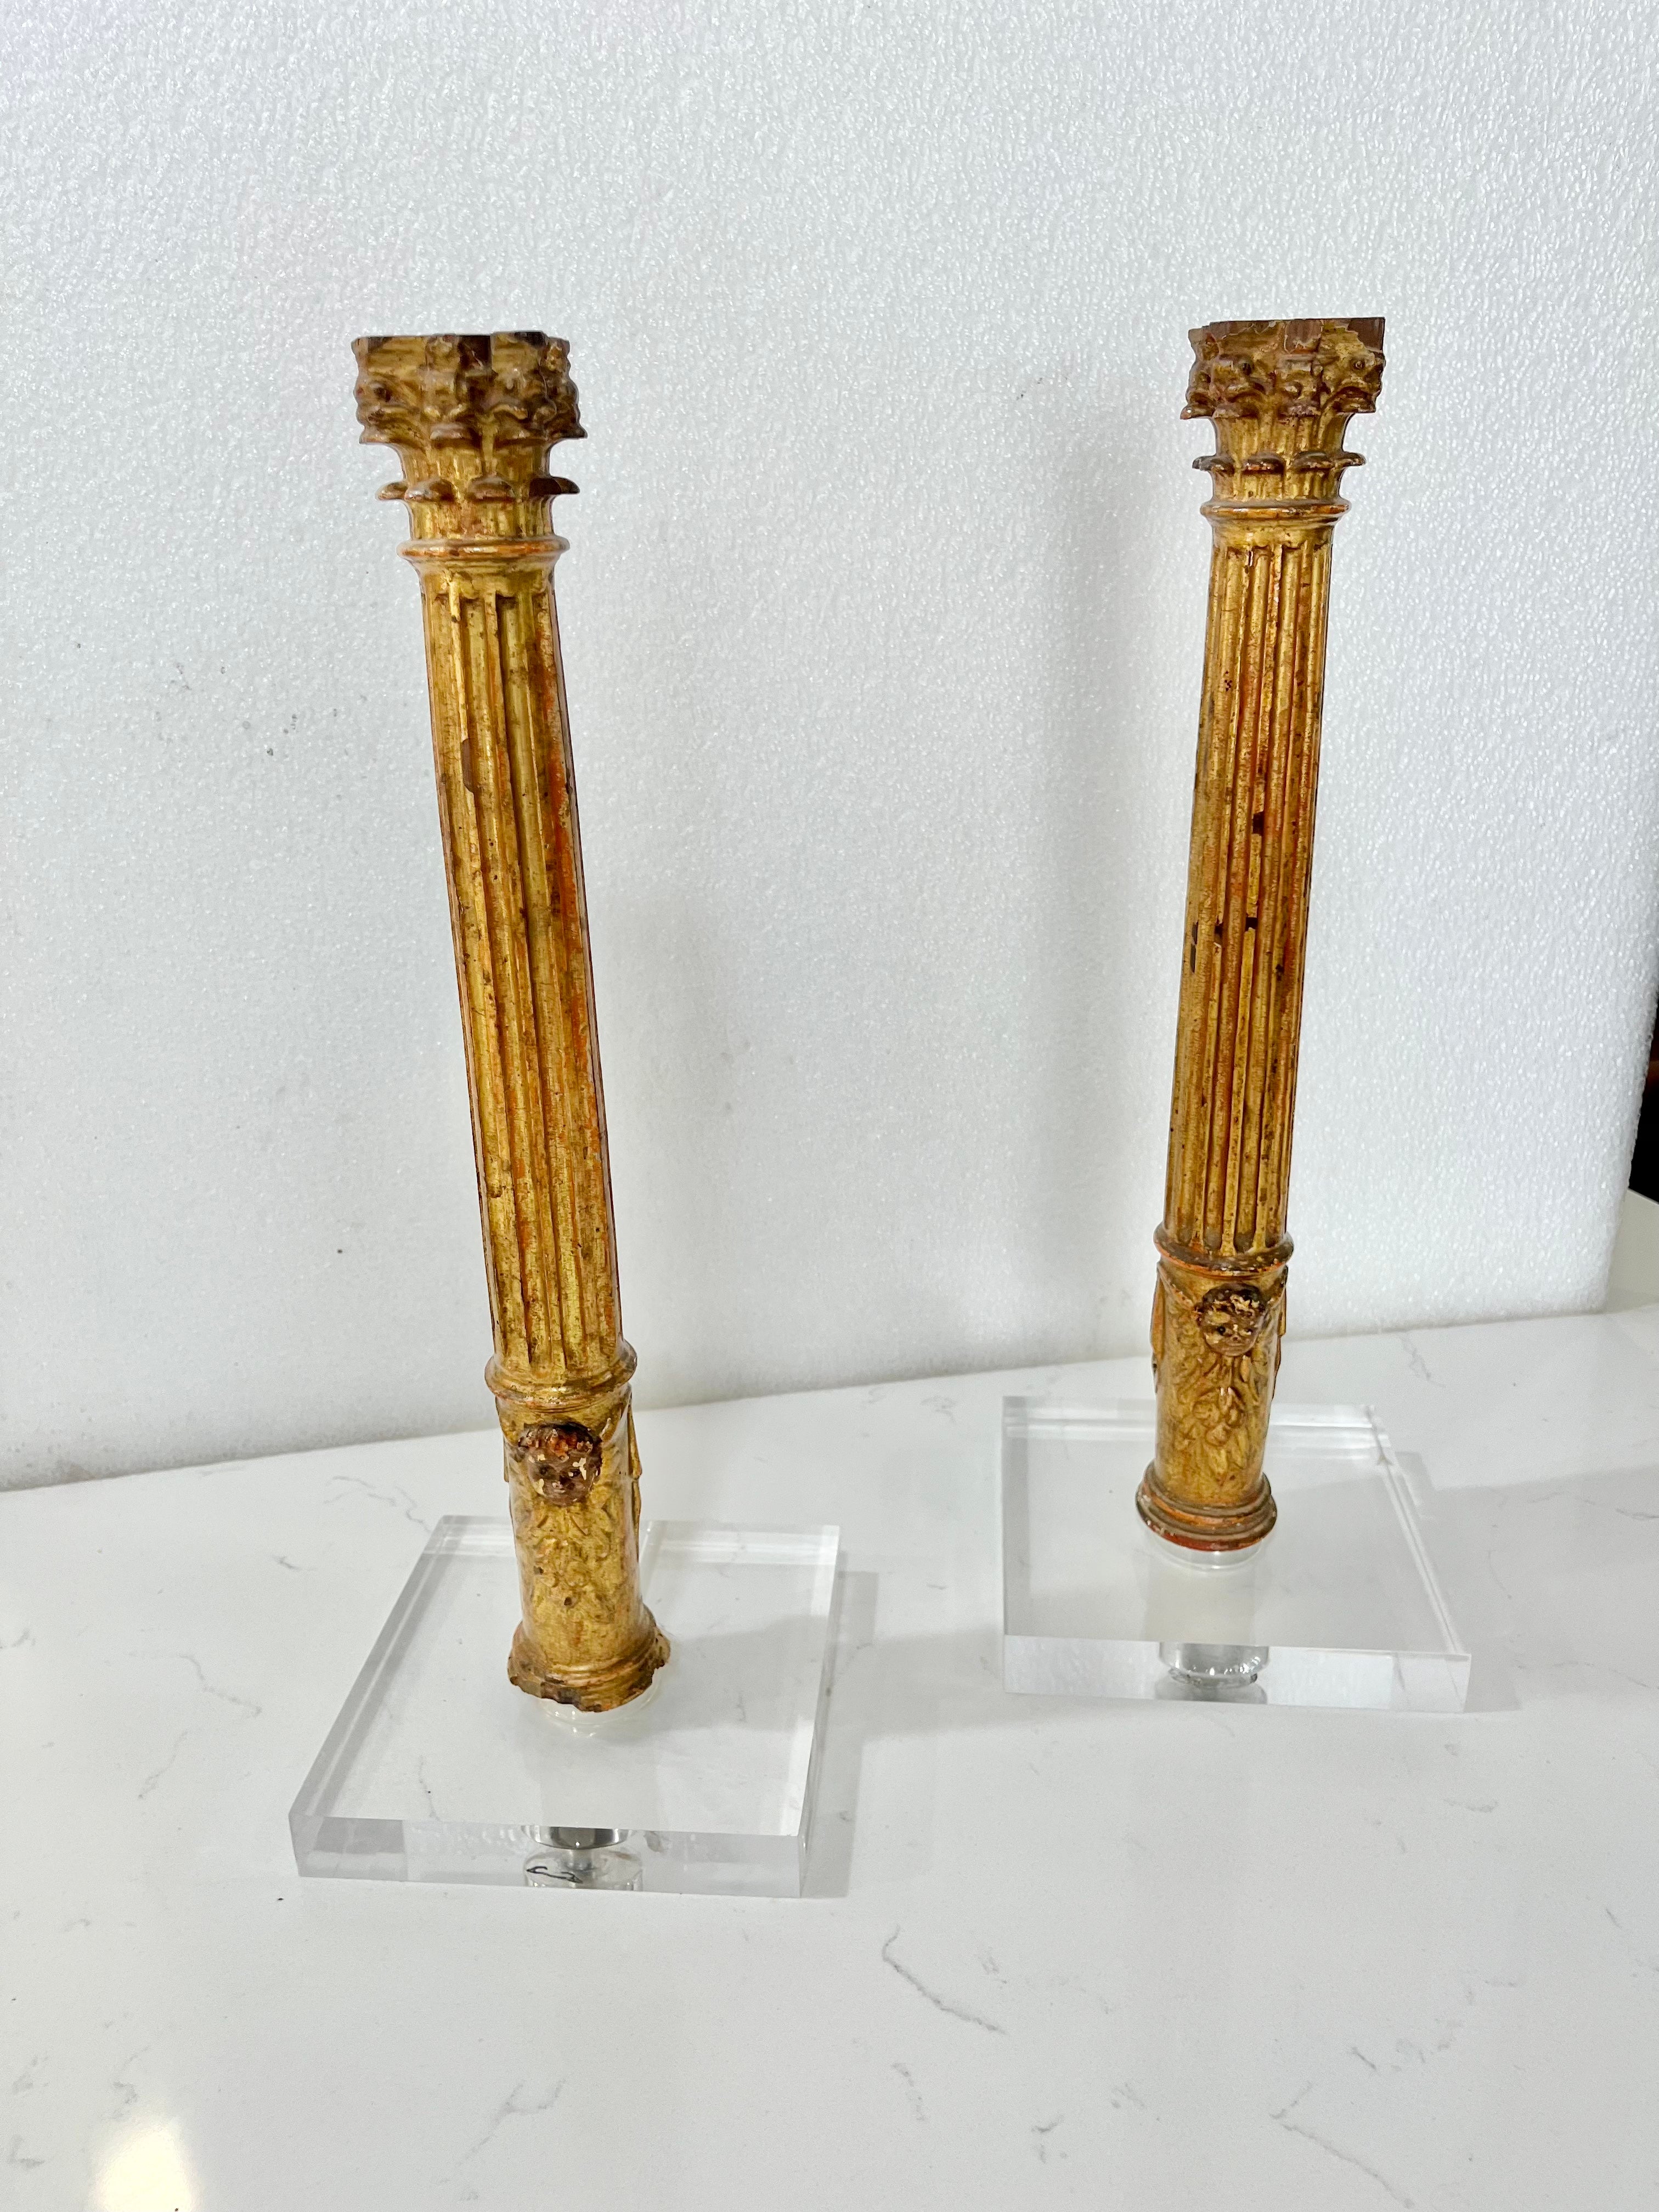 Ein schön geschnitztes Paar vergoldeter Säulen mit korinthischen Kapitellen aus der Grand-Tour-Periode des 19. Jahrhunderts, die jetzt auf zeitgenössischen Acrylsockeln mit einem Rückkanal für die Lampenverkabelung montiert sind.      

Präsentiert